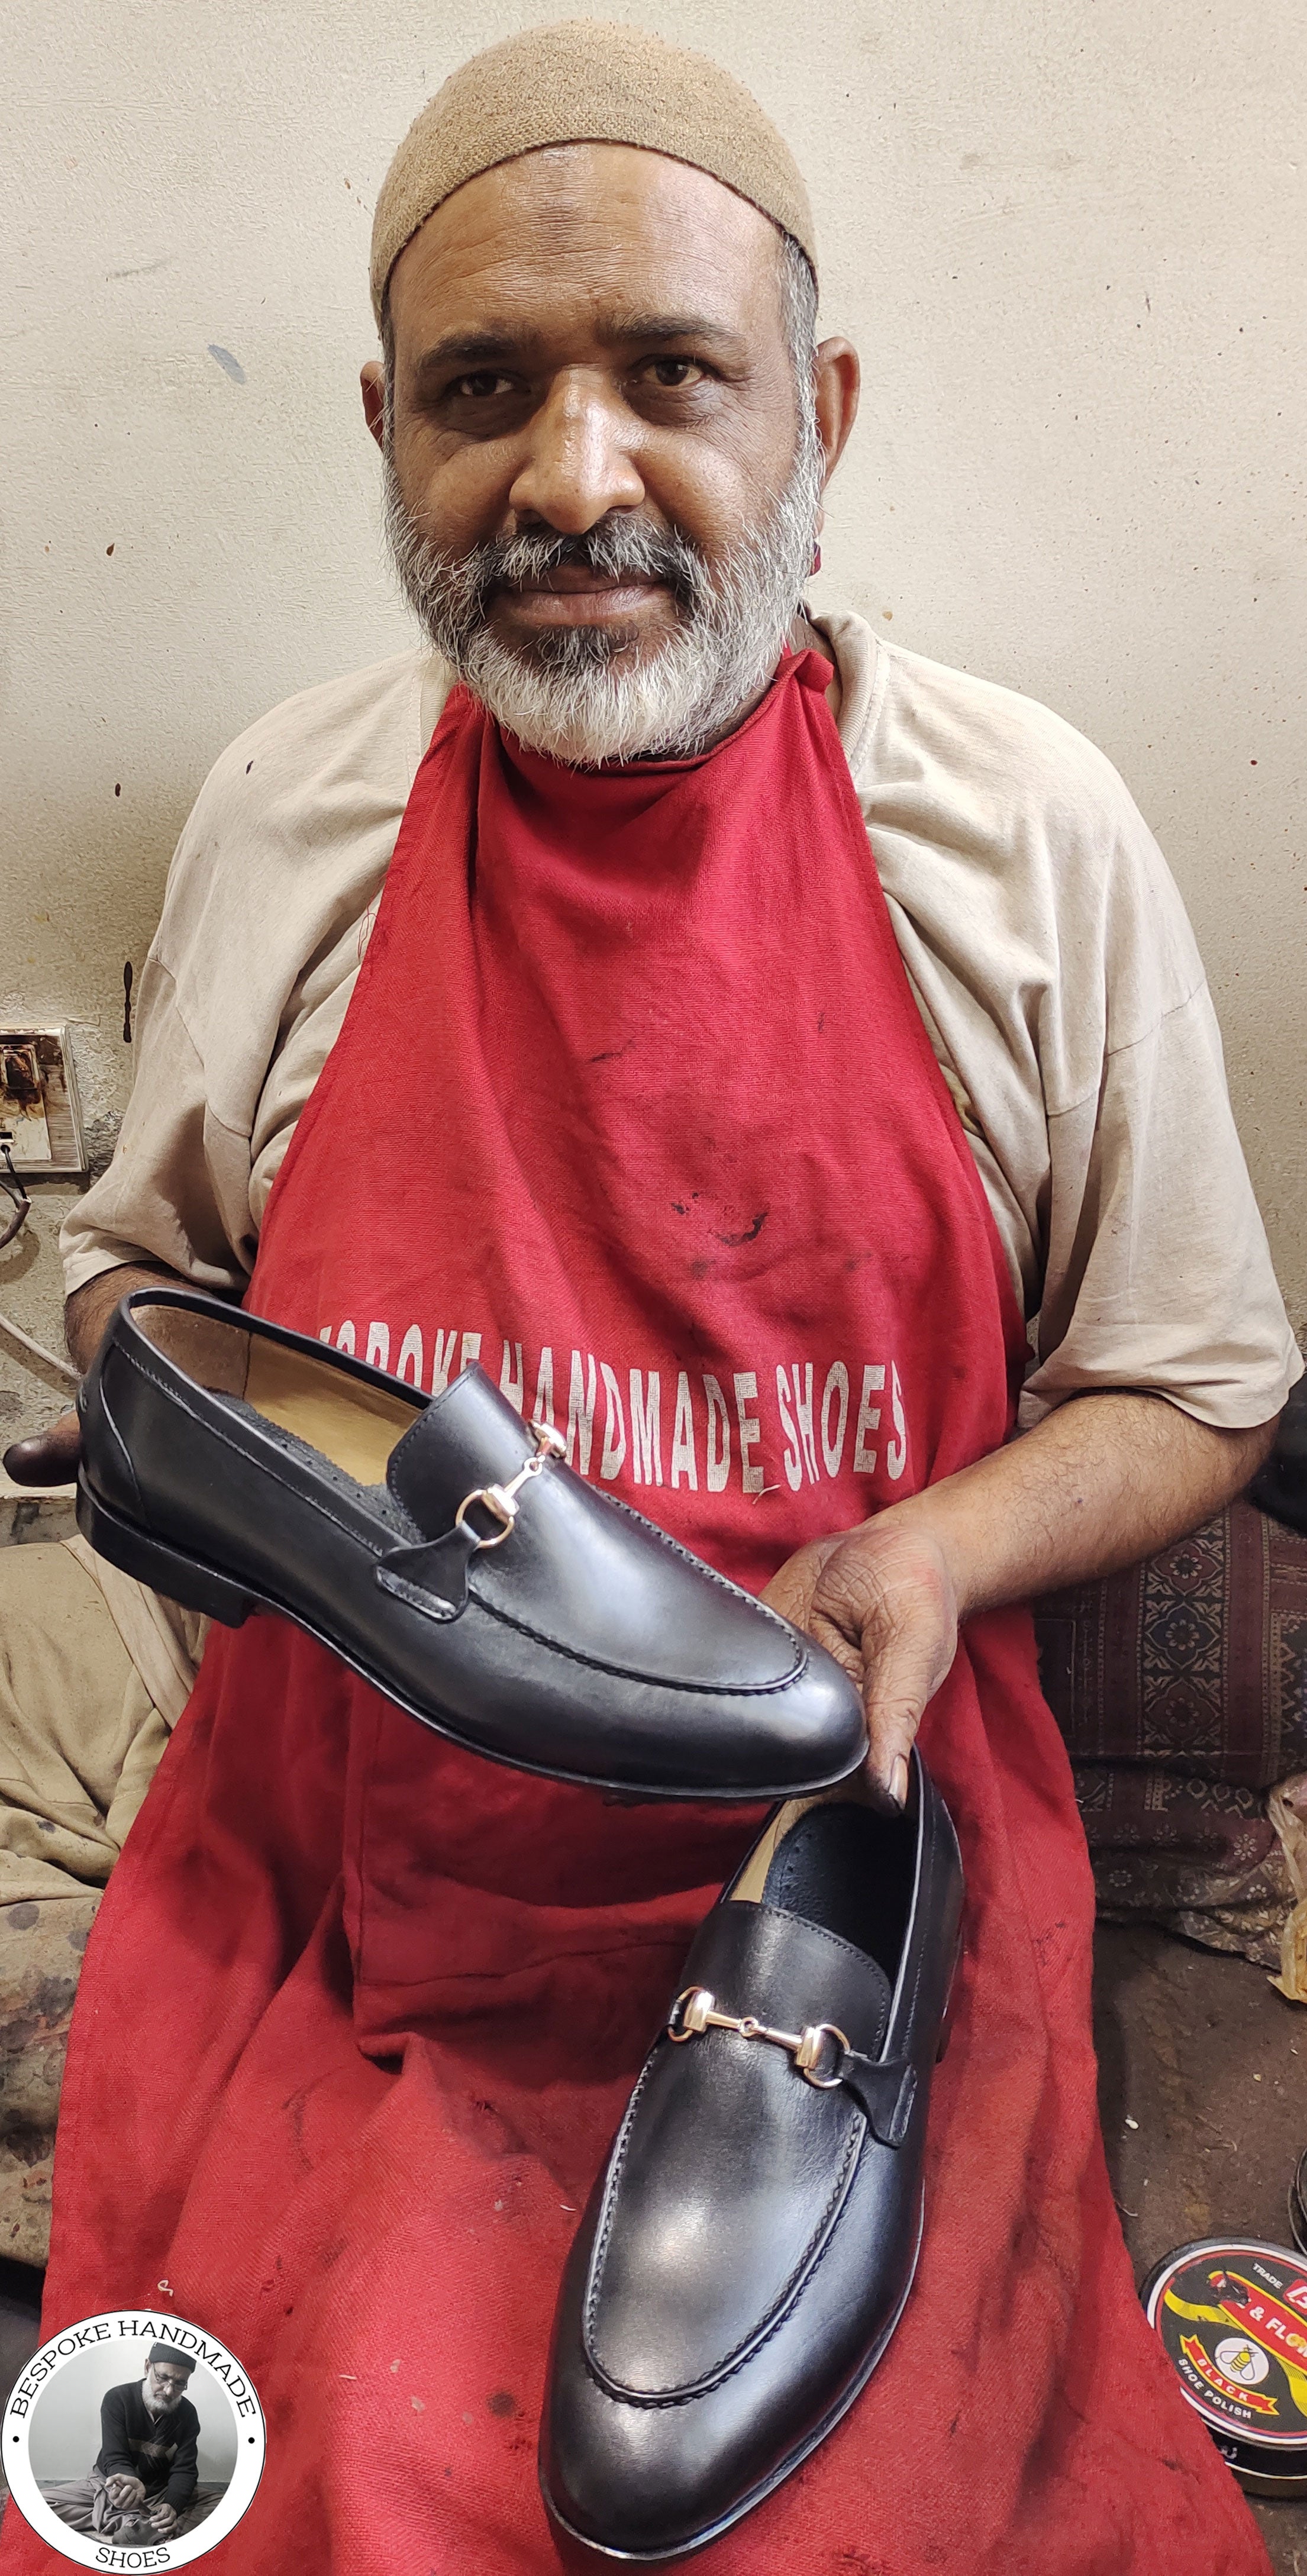 Bespoke Handmade Business Shoe, Black Leather Buckle Loafer Slip on Moccasin Men's Shoes